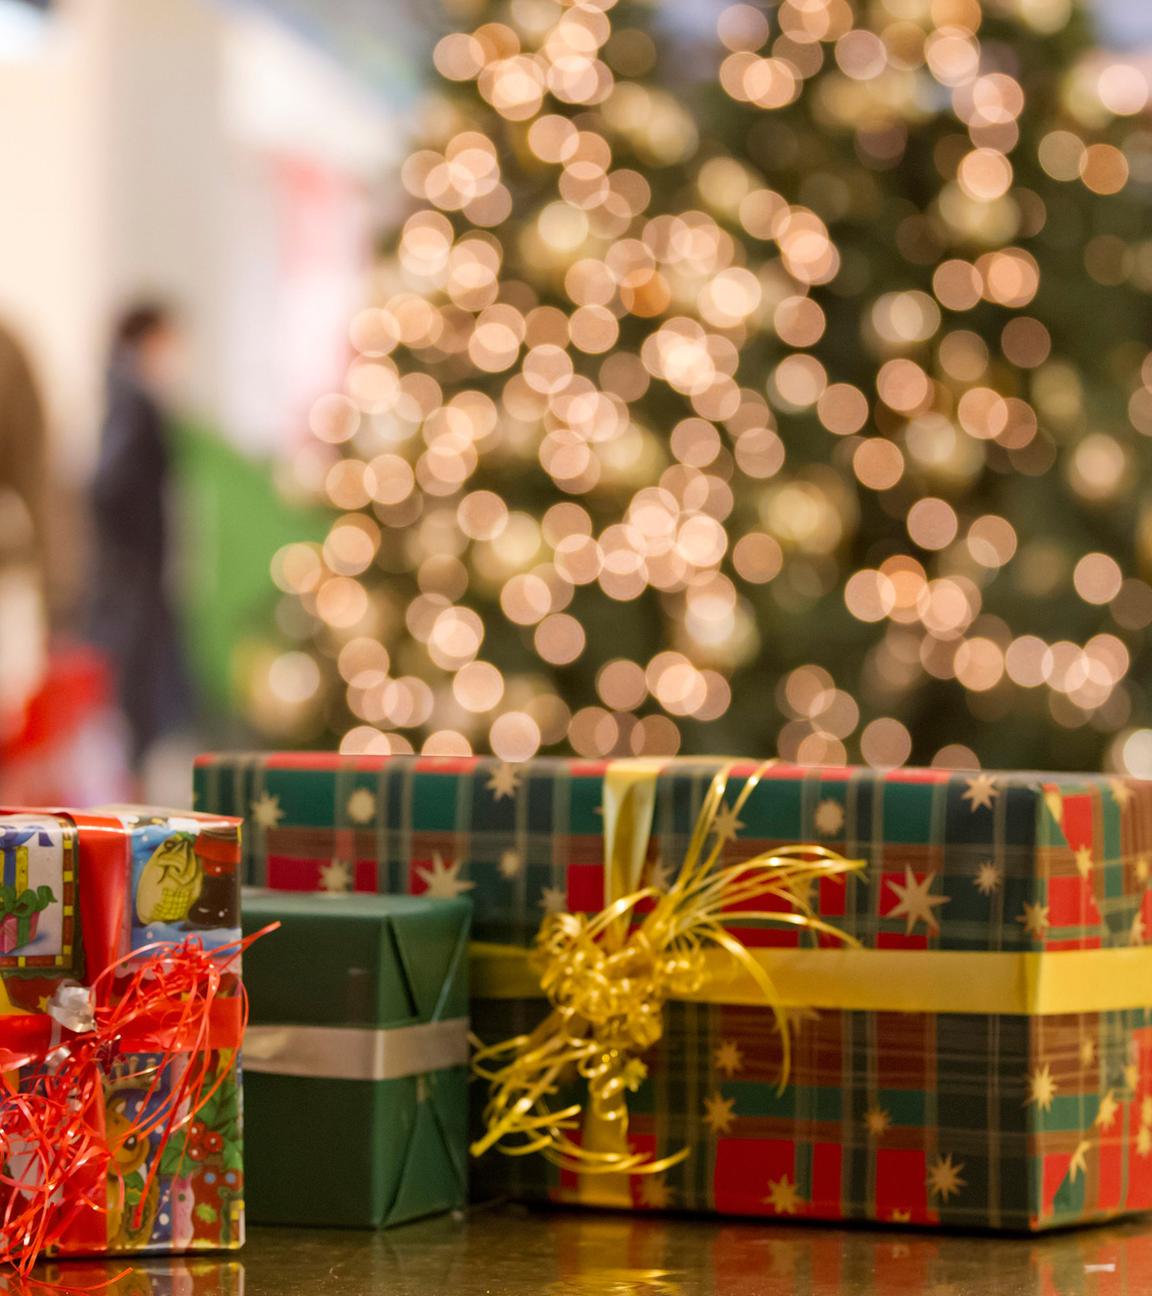 Vier Weihnachtsgeschenke liegen nebeneinander, im Hintergrund steht ein geschmückter Weihnachtsbaum und Menschen gehen vorbei.